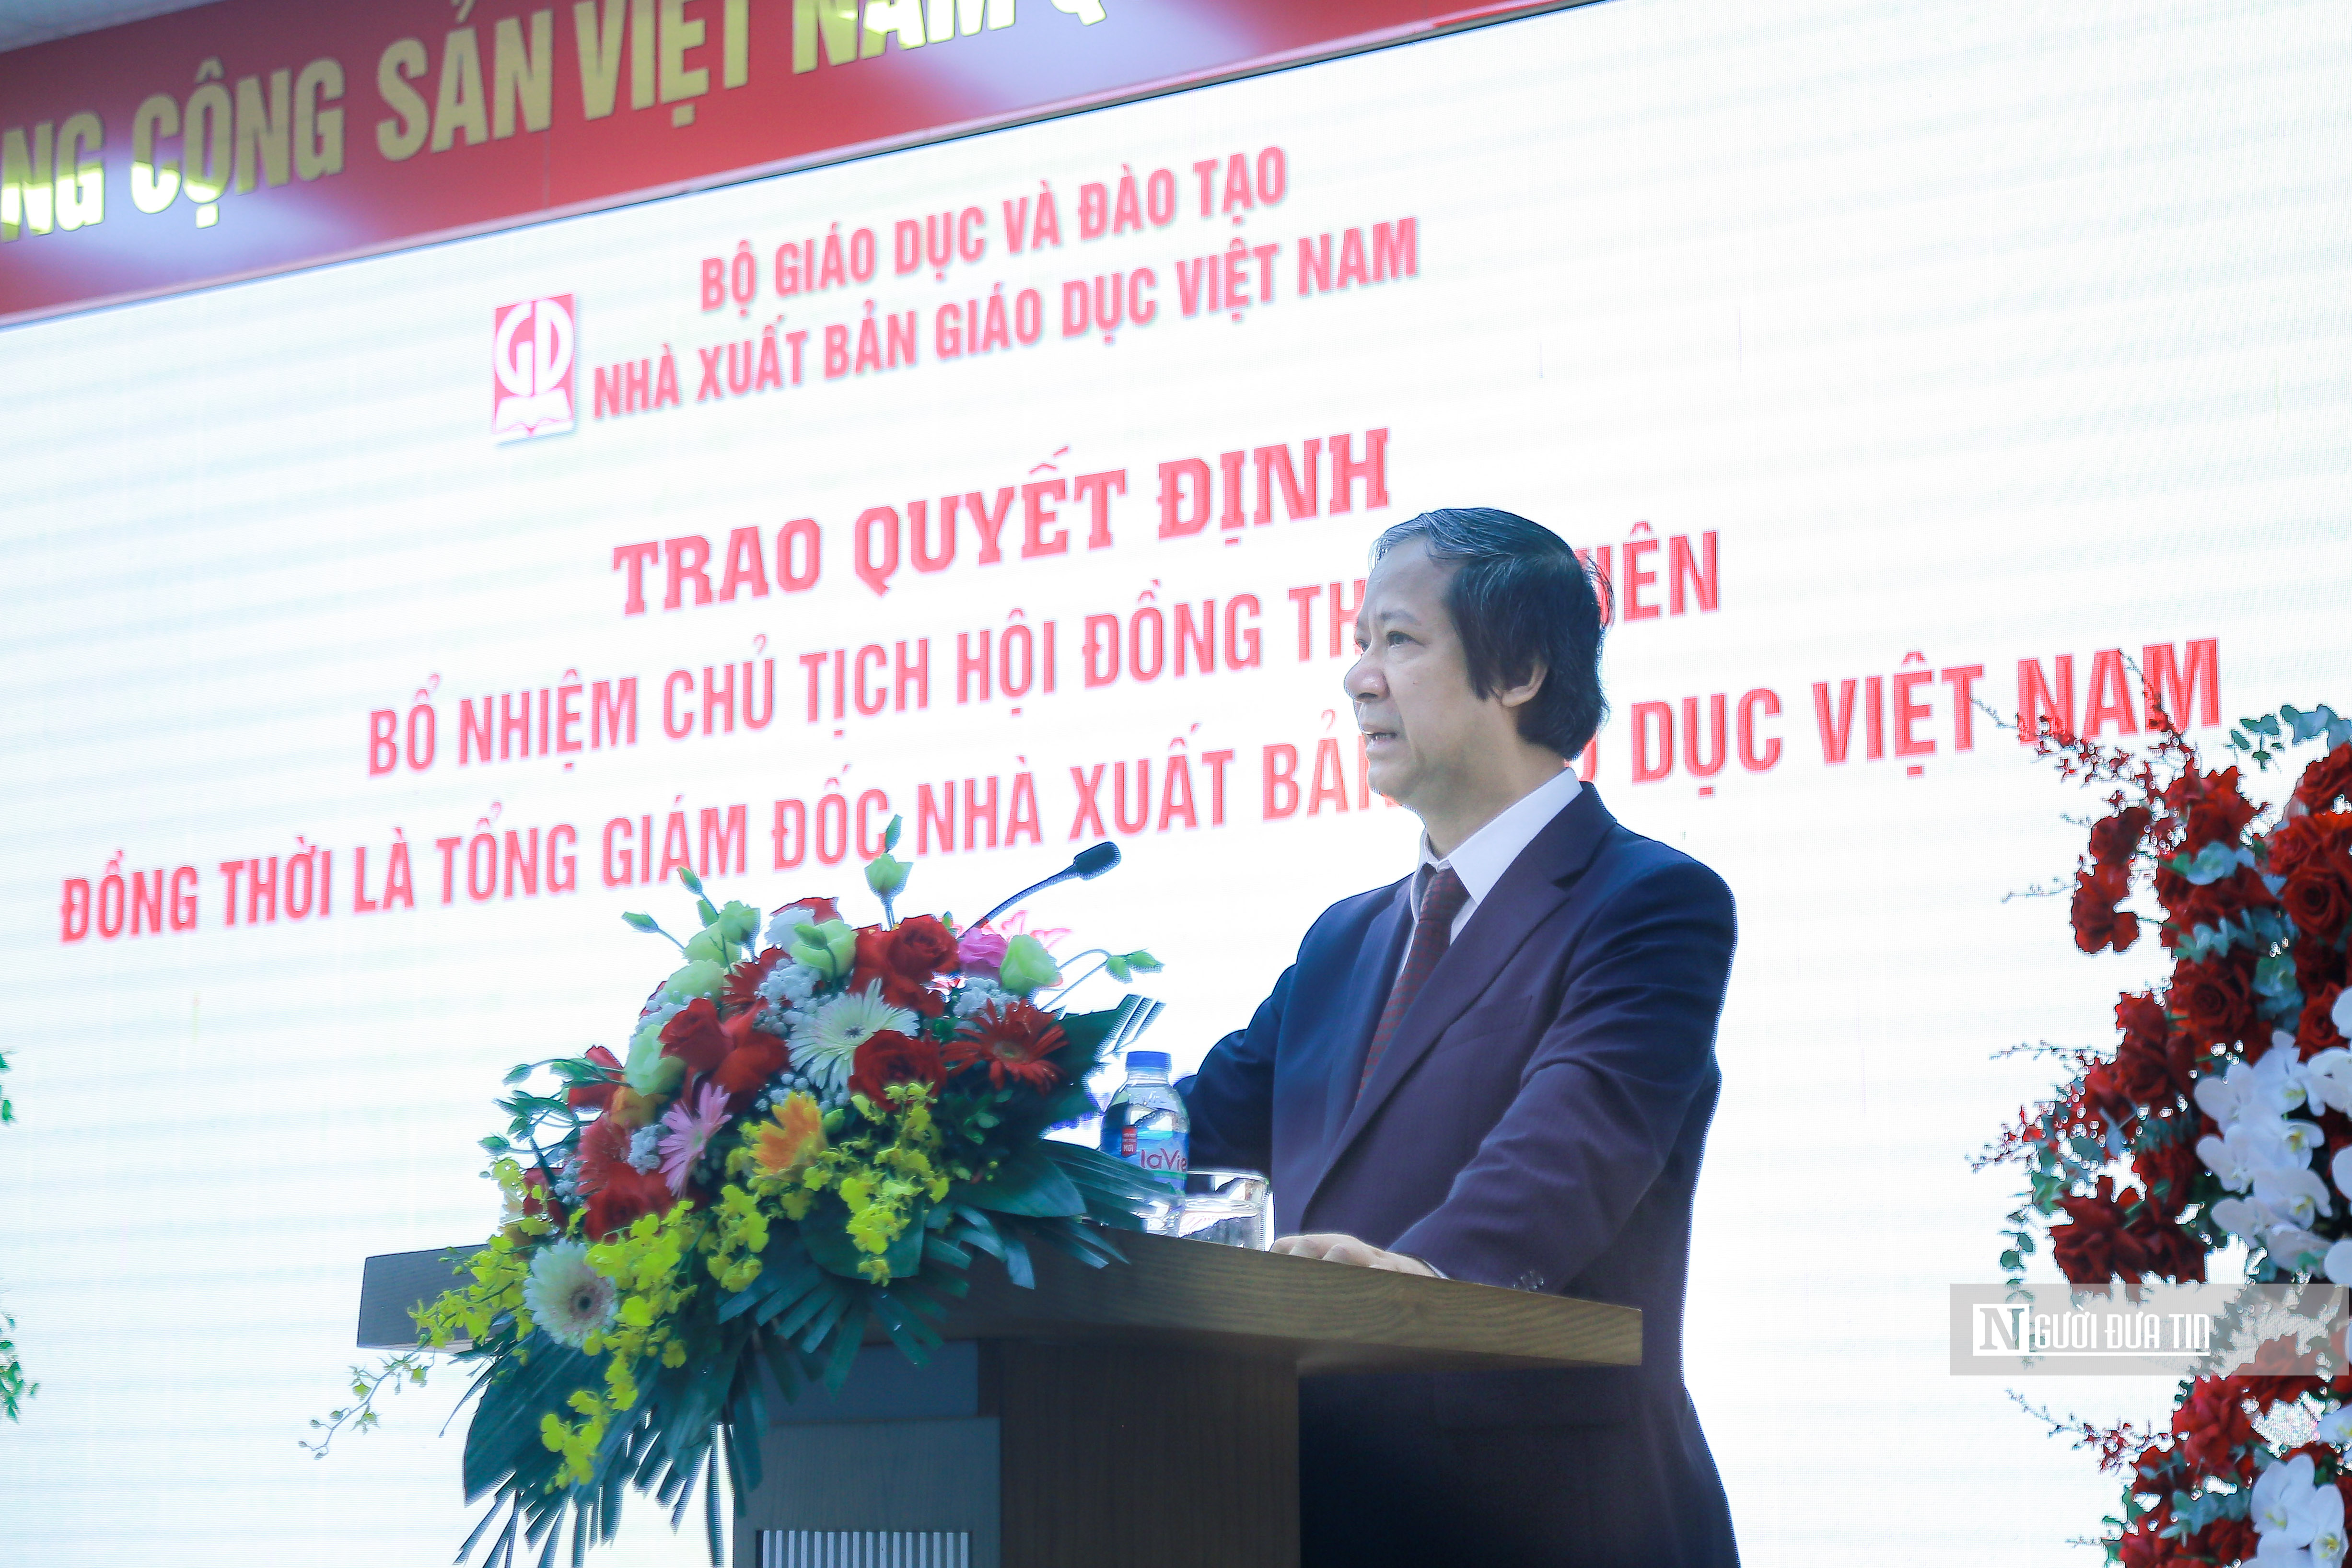 Tiêu điểm - Trao quyết định bổ nhiệm Chủ tịch HĐTV, TGĐ NXB Giáo dục Việt Nam (Hình 2).